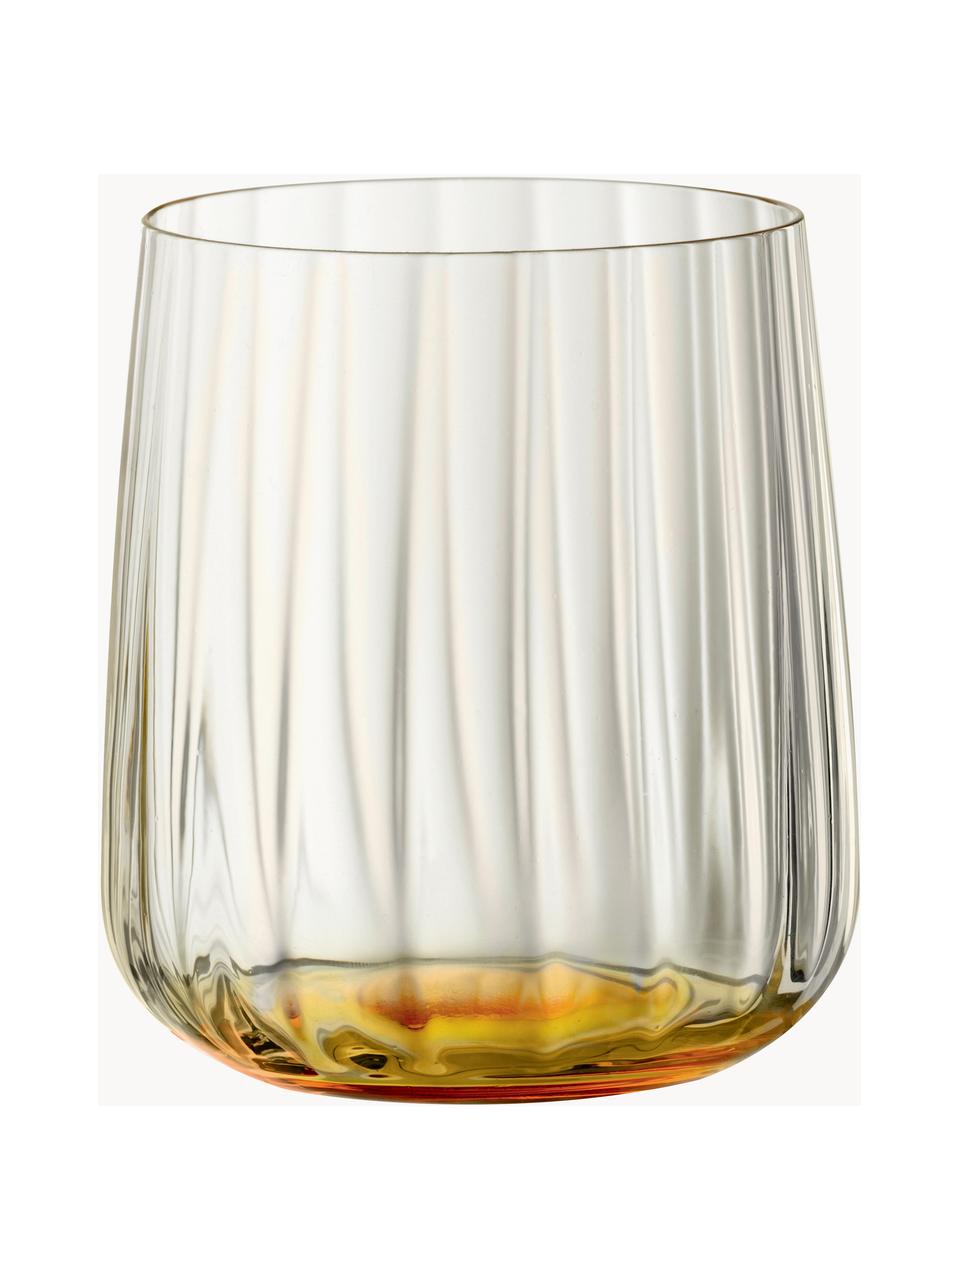 Kristall-Gläser Lifestyle, 2 Stück, Kristallglas, Ockergelb, Ø 8 x H 9 cm, 340 ml